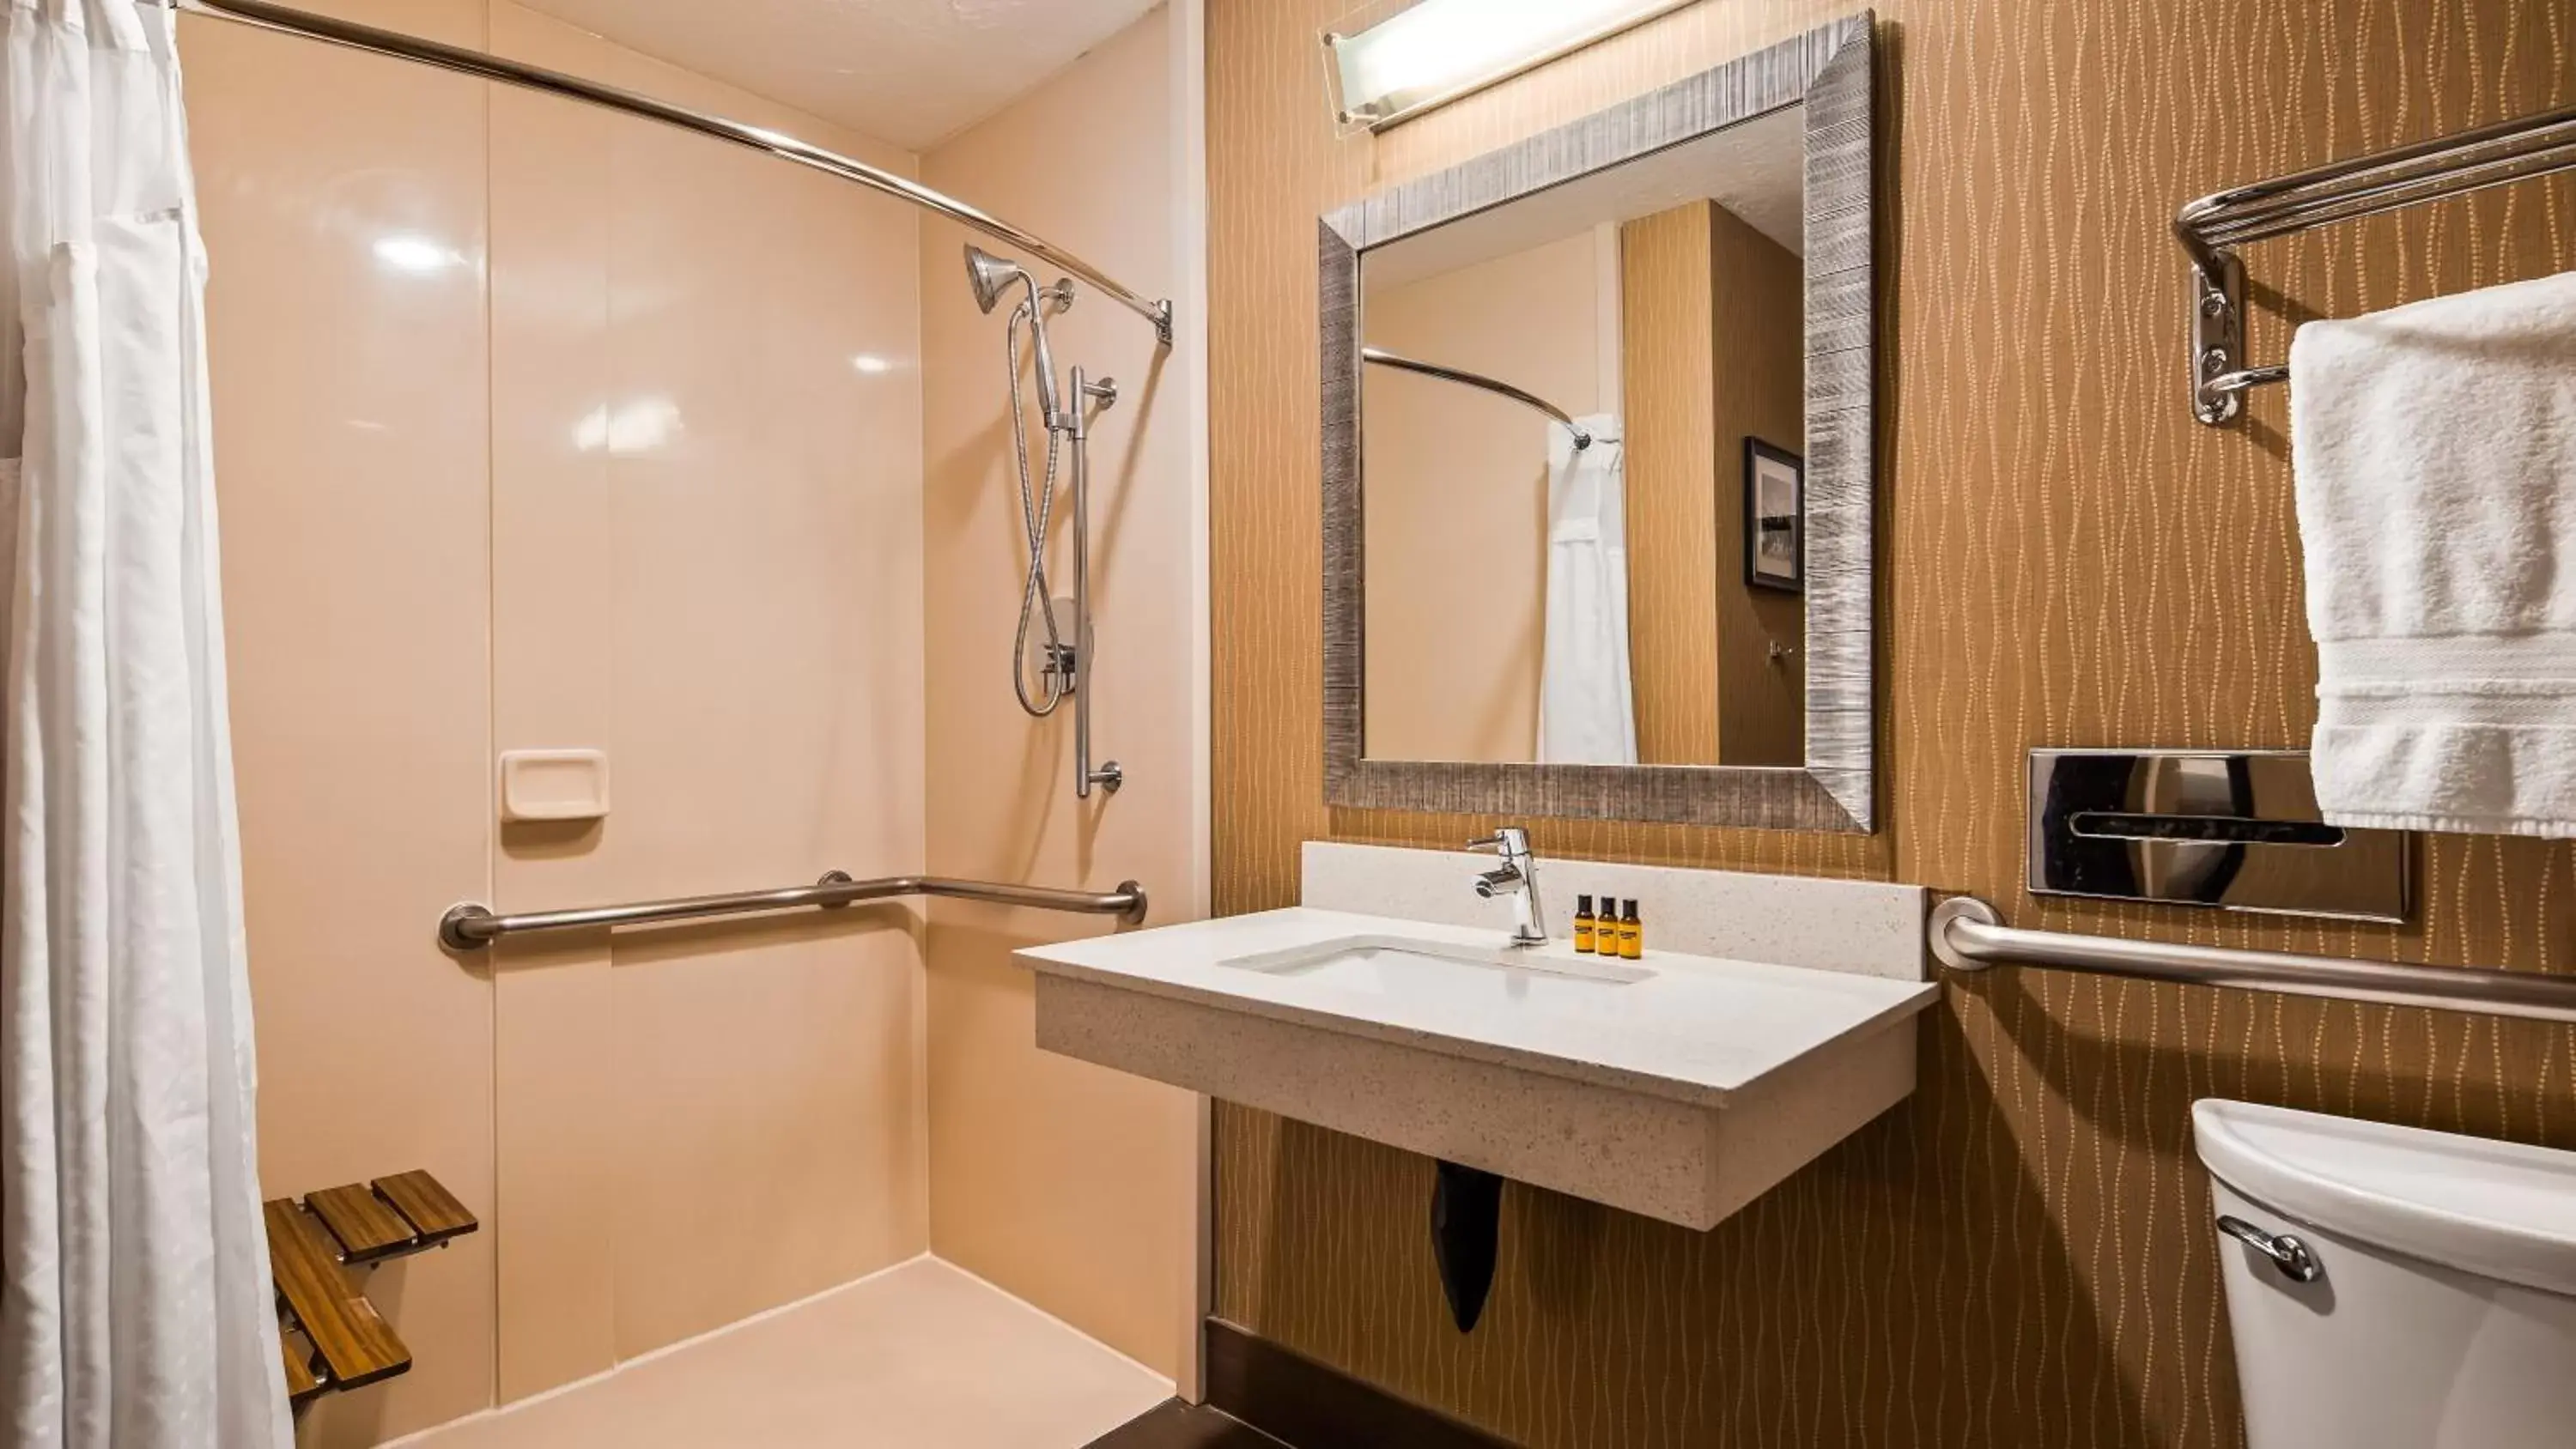 Bedroom, Bathroom in Best Western Plus Portland Airport Hotel & Suites